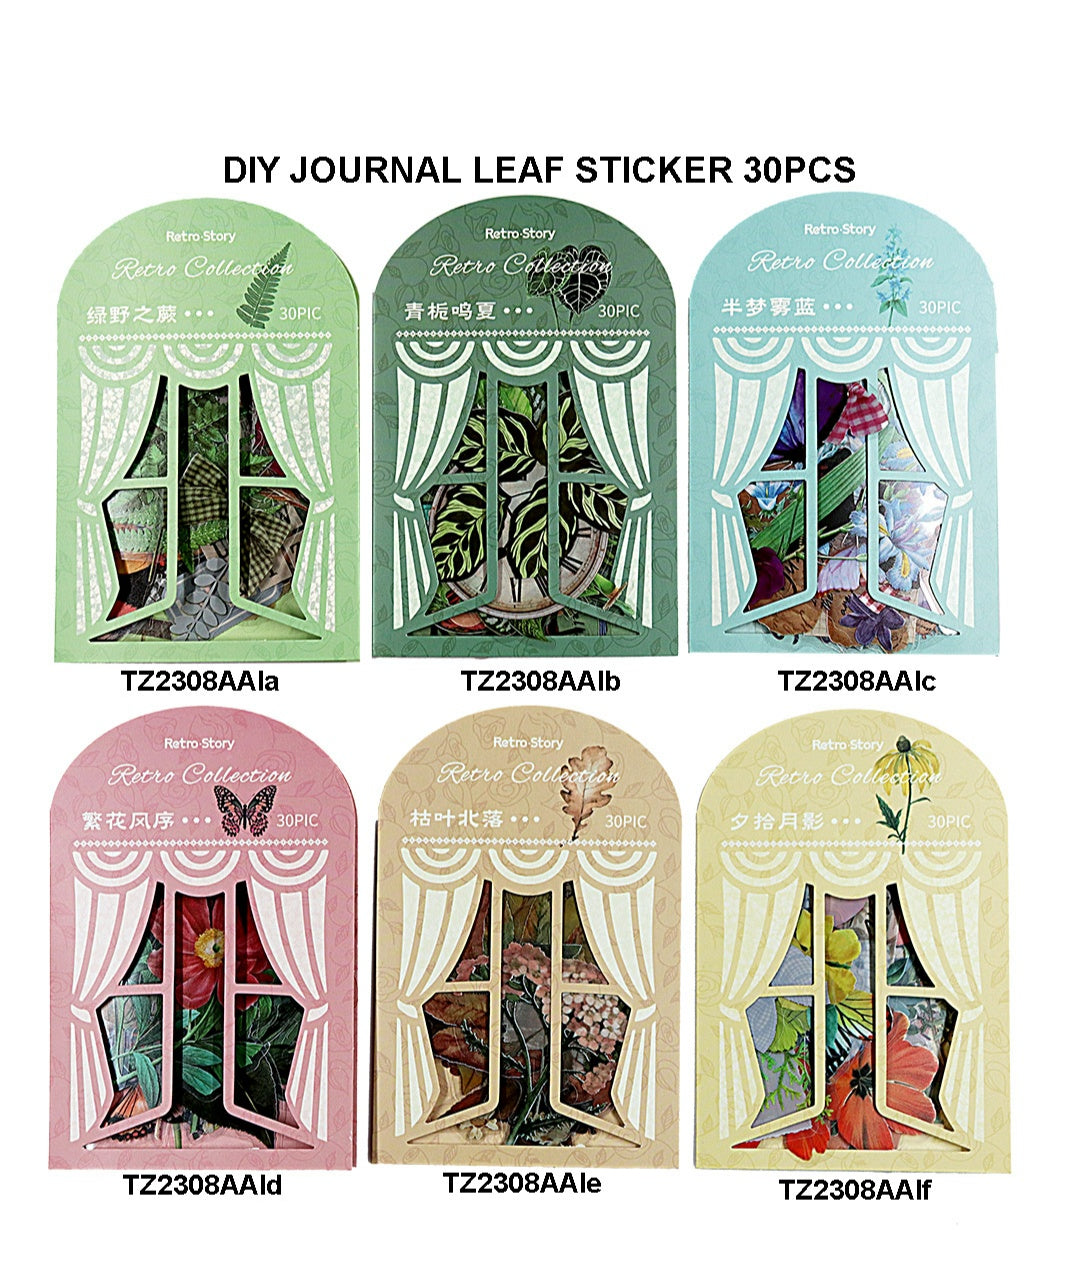 Diy Journal Leaf Sticker 30Pcs 212 Tz2308Aai | INKARTO